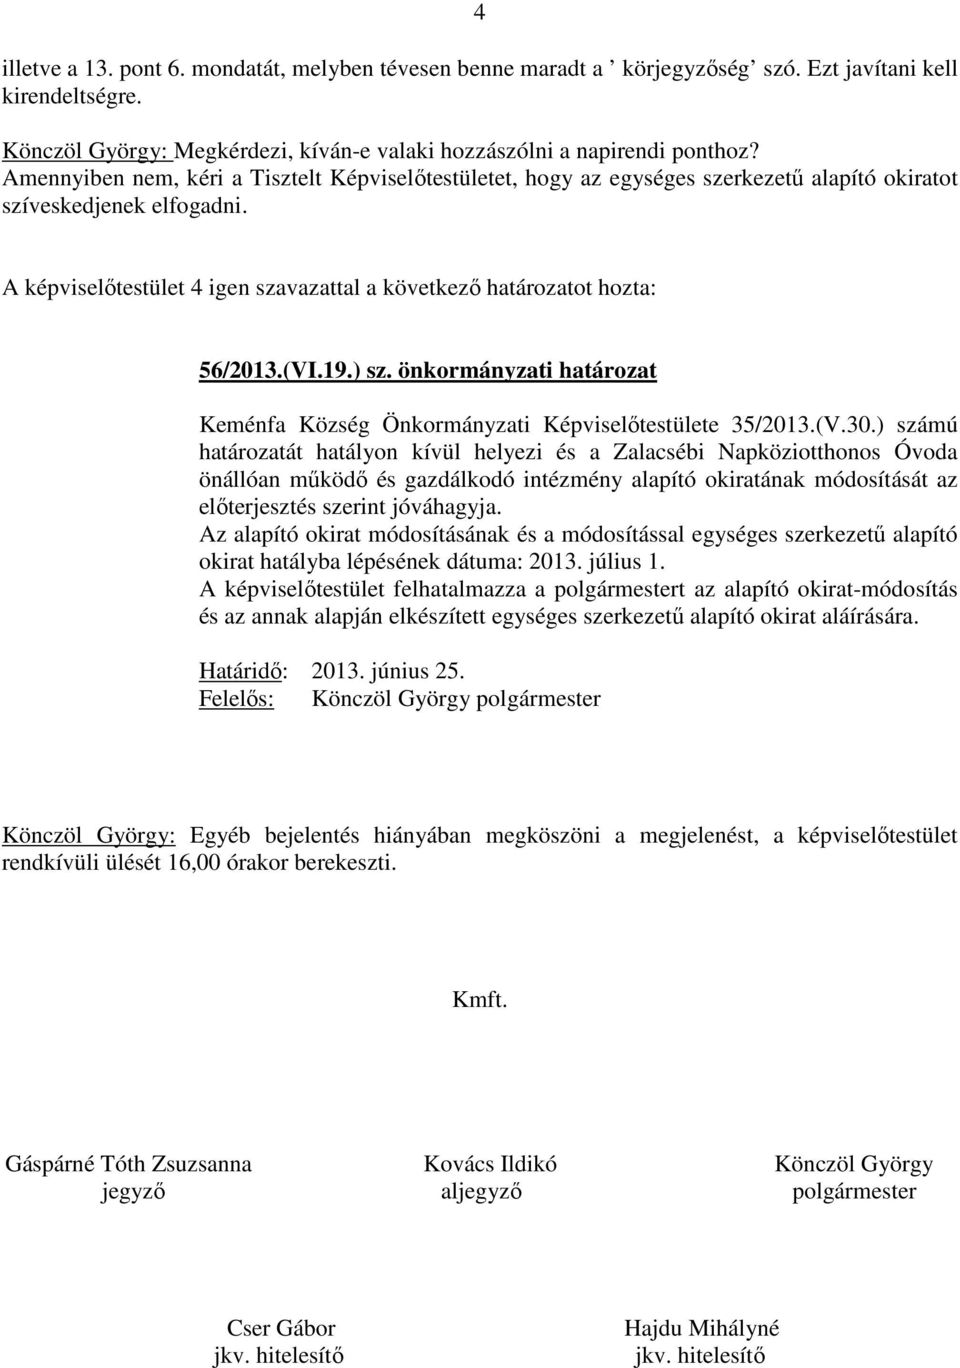 önkormányzati határozat Keménfa Község Önkormányzati Képviselőtestülete 35/2013.(V.30.